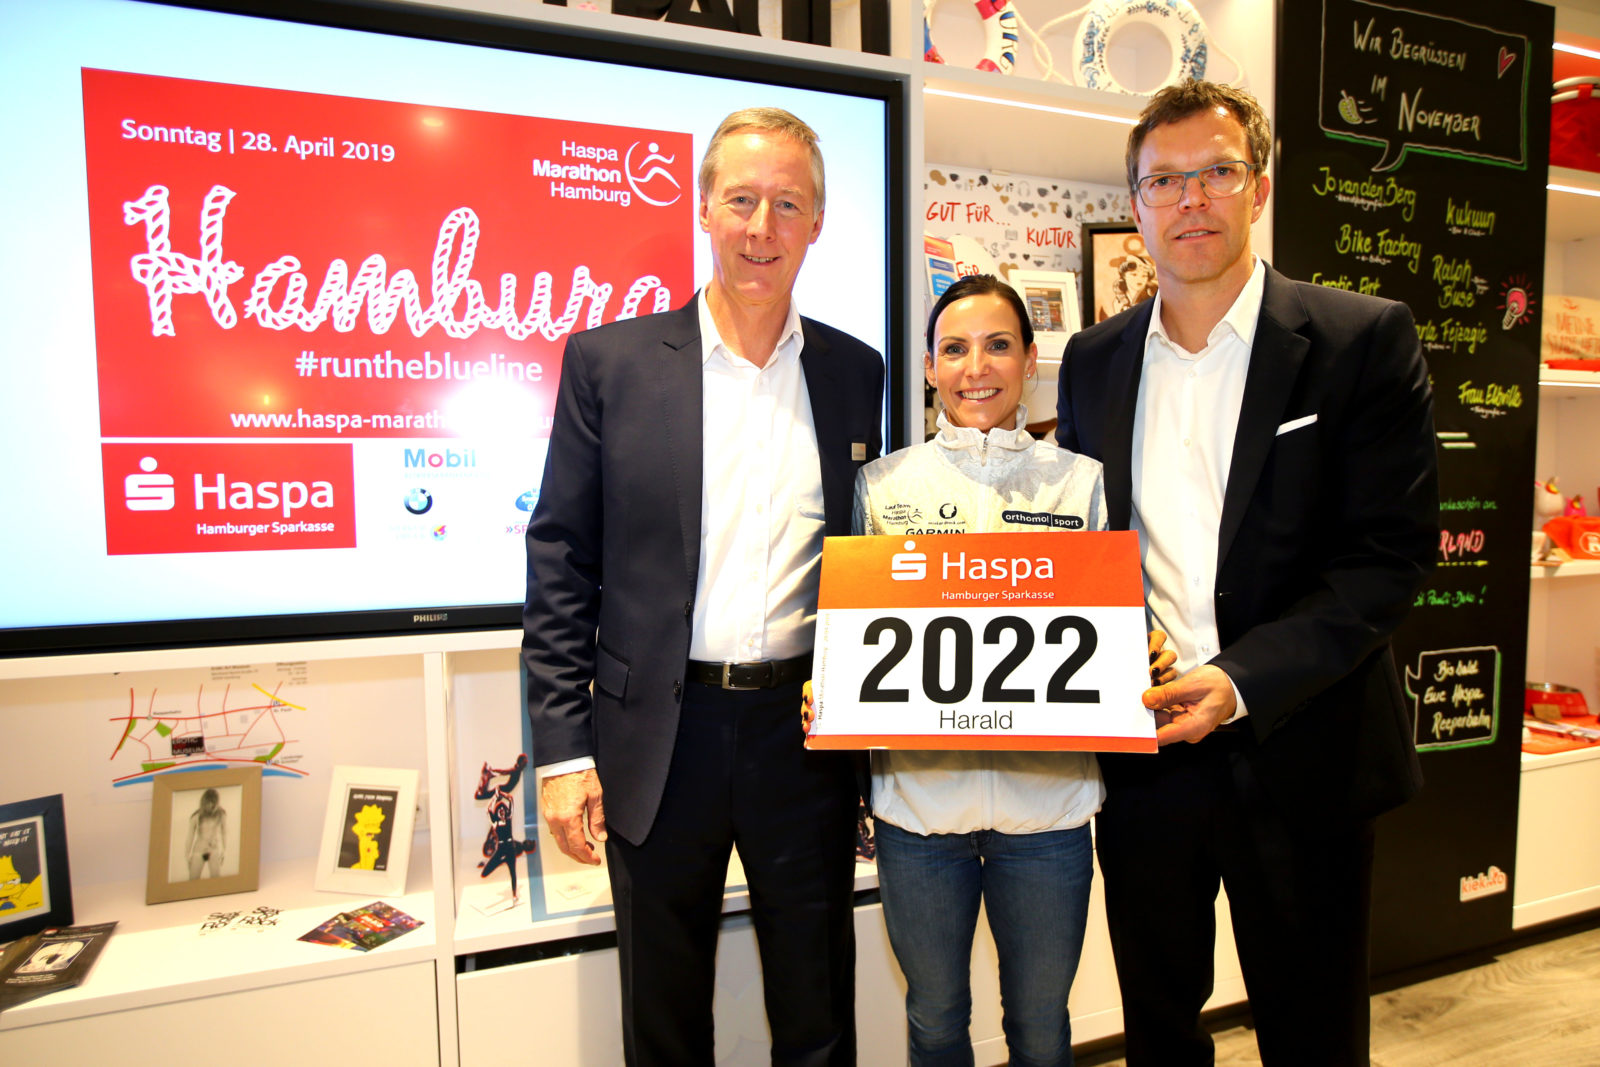 Haspa verlängert bis 2022 – Mocki läuft Halbmarathon